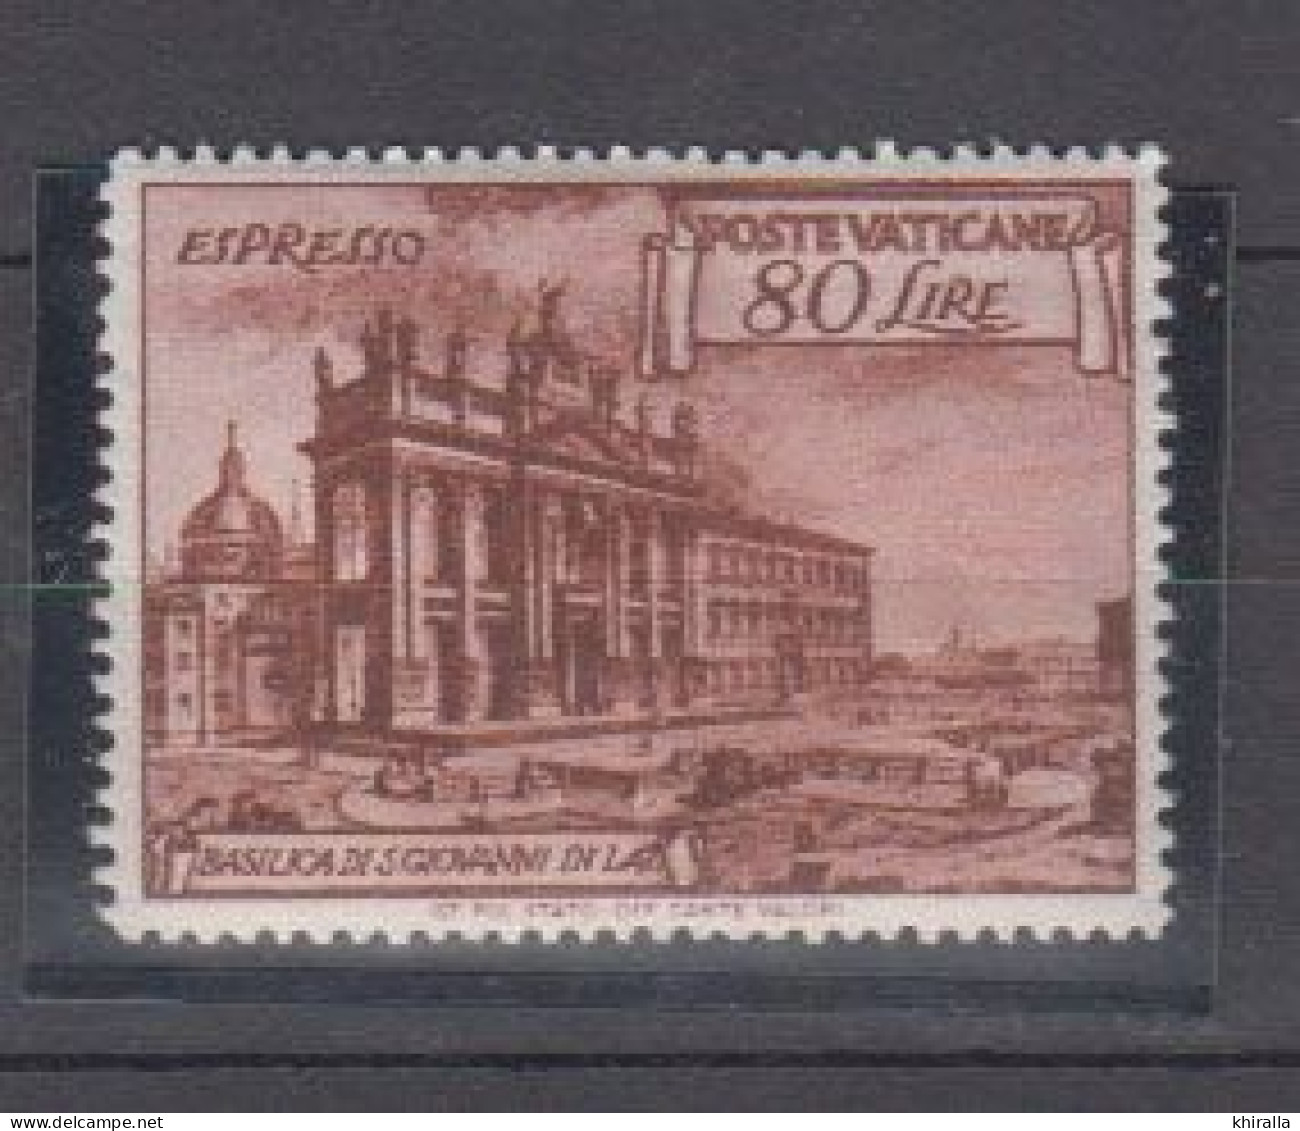 VATICAN    1949    Exprés  N°  11   ( Neufs Sans Charniére )   COTE  55 € 00       ( D 88 ) - Priority Mail